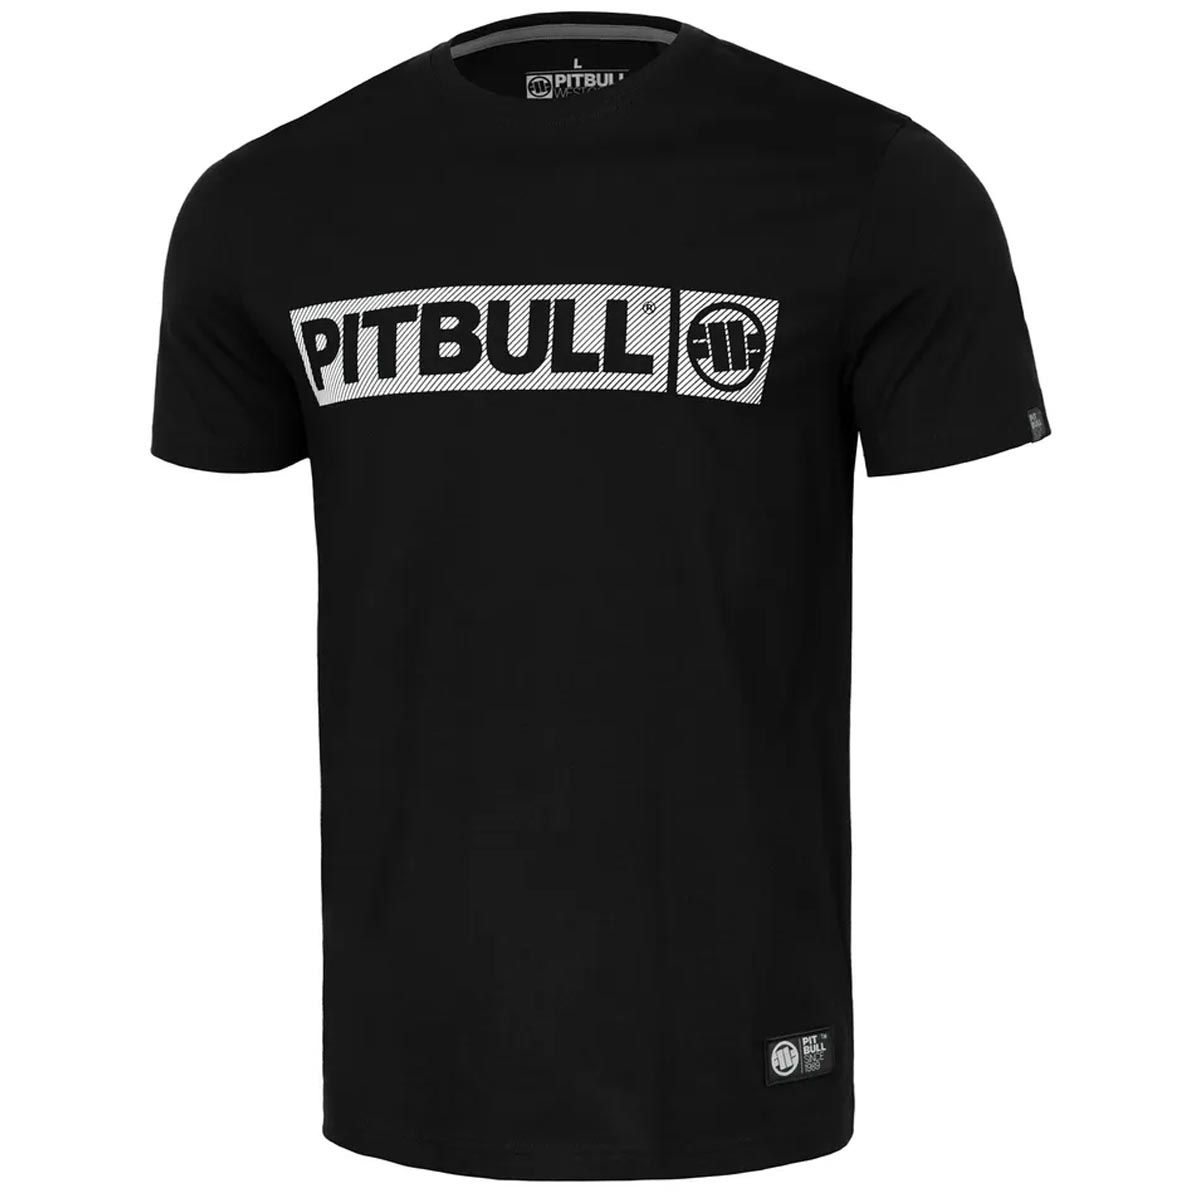 Pit Bull West Coast T-Shirt, Ultra Light Hilltop, schwarz